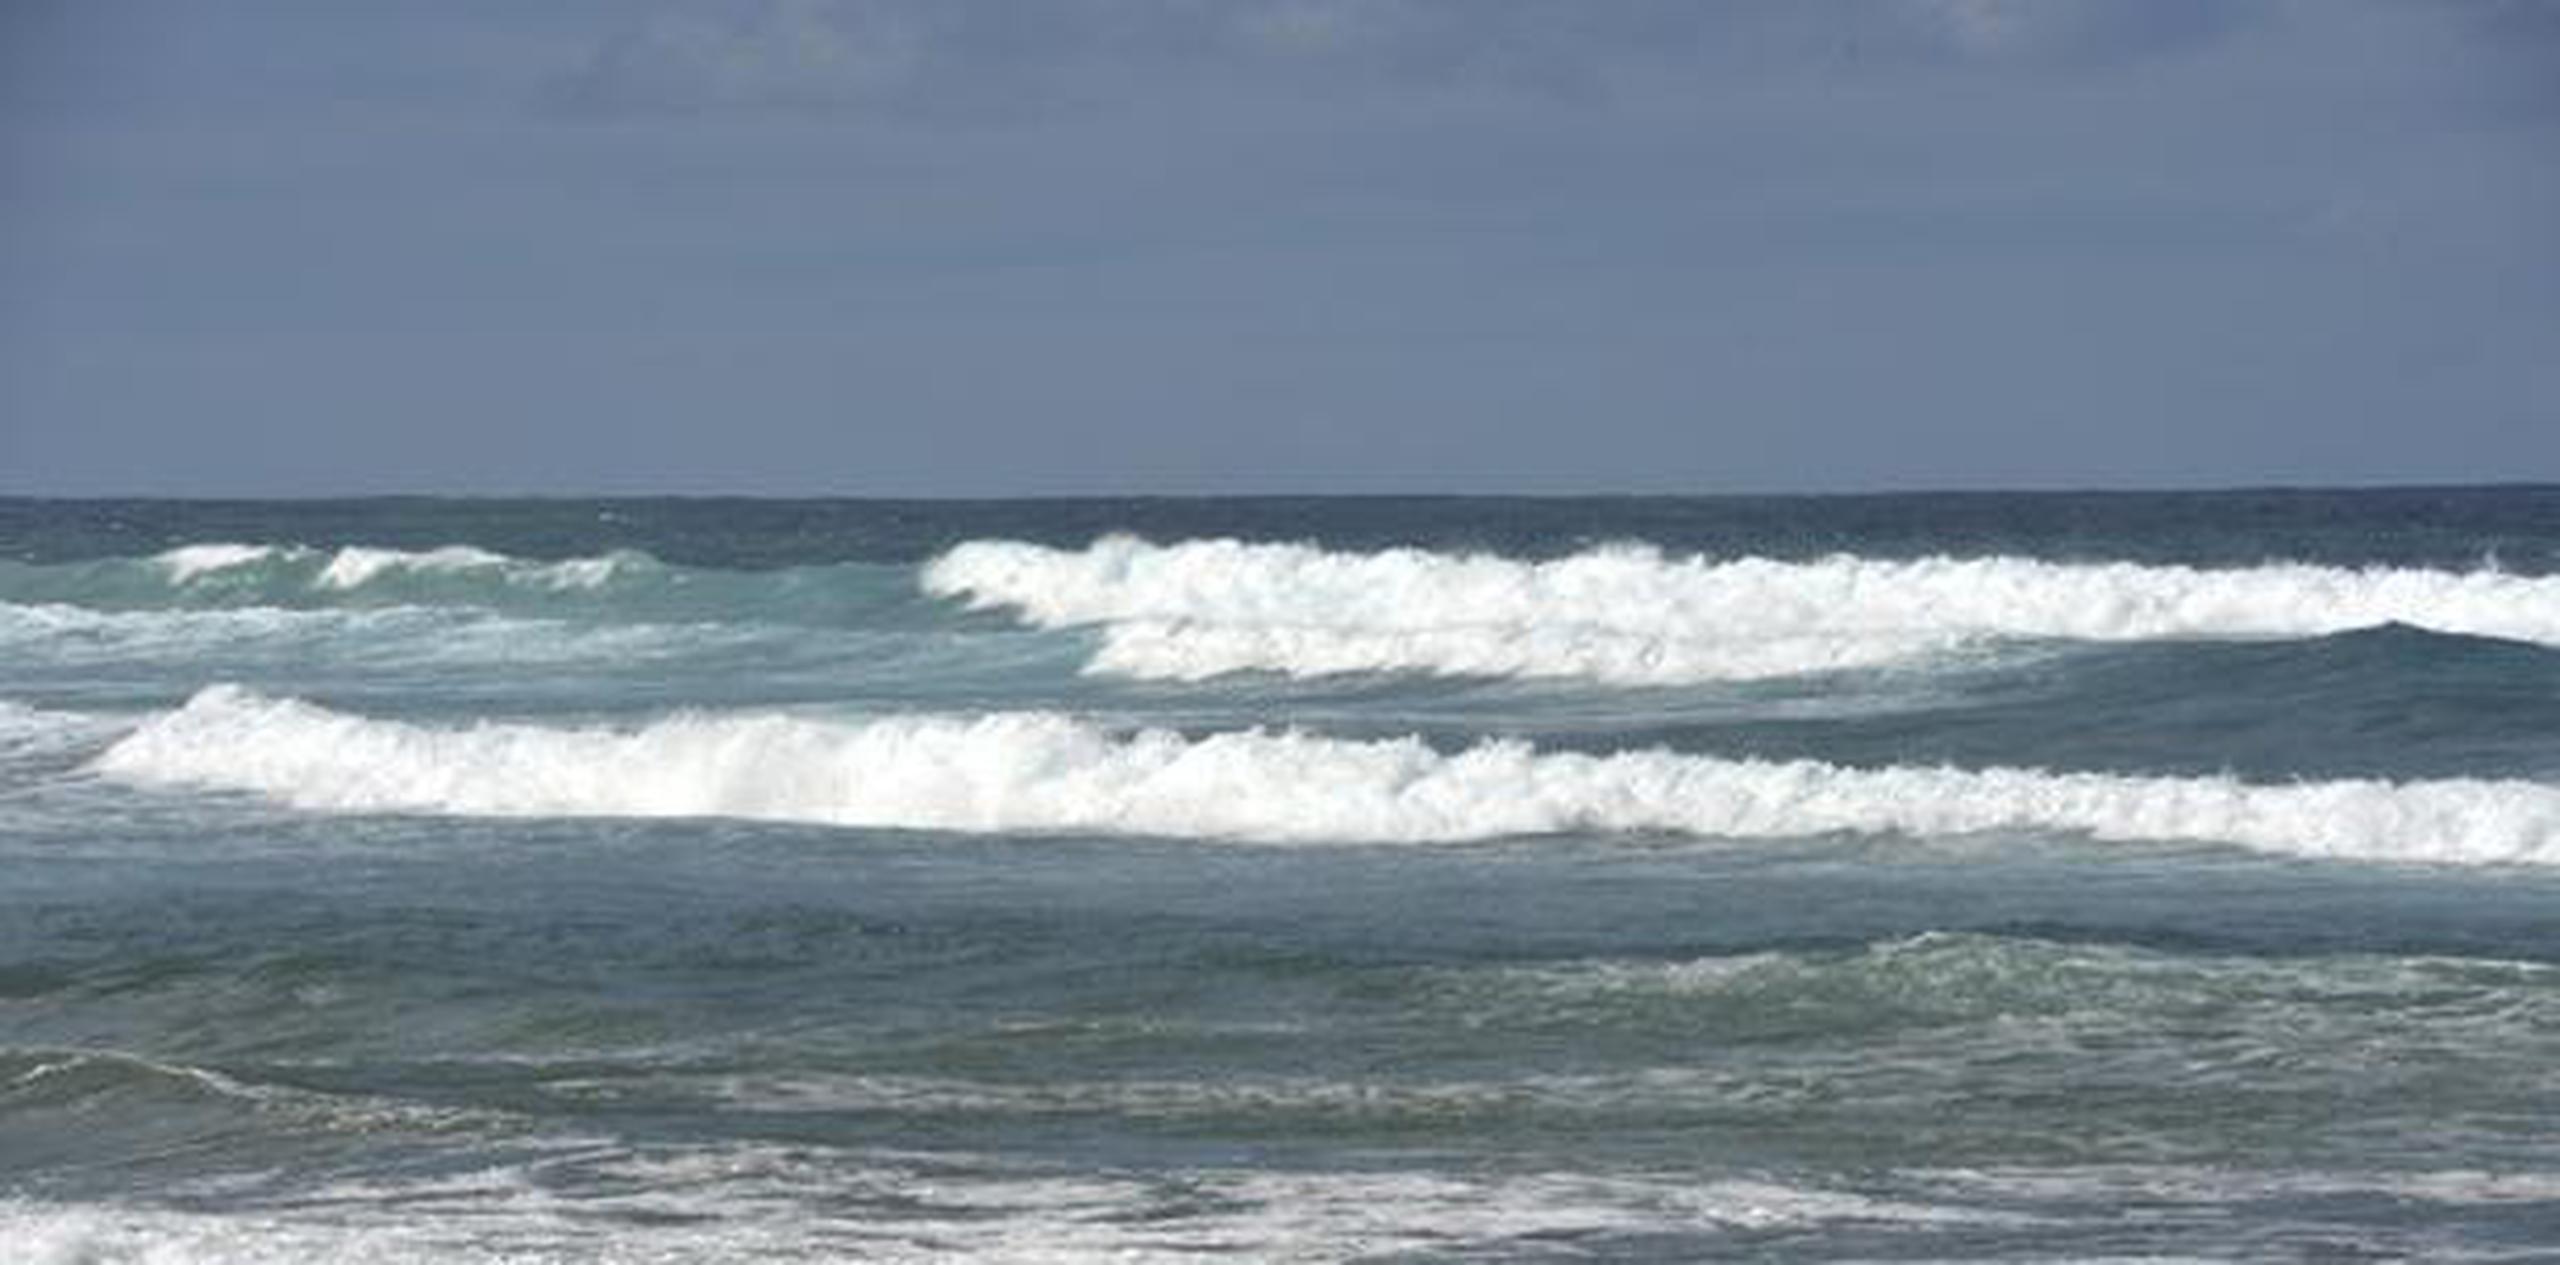 Las olas podrían alcanzar los seis pies de altura en aguas cercanas y fuera, en el Océano Atlántico y el Pasaje de la Mona. (Archivo)